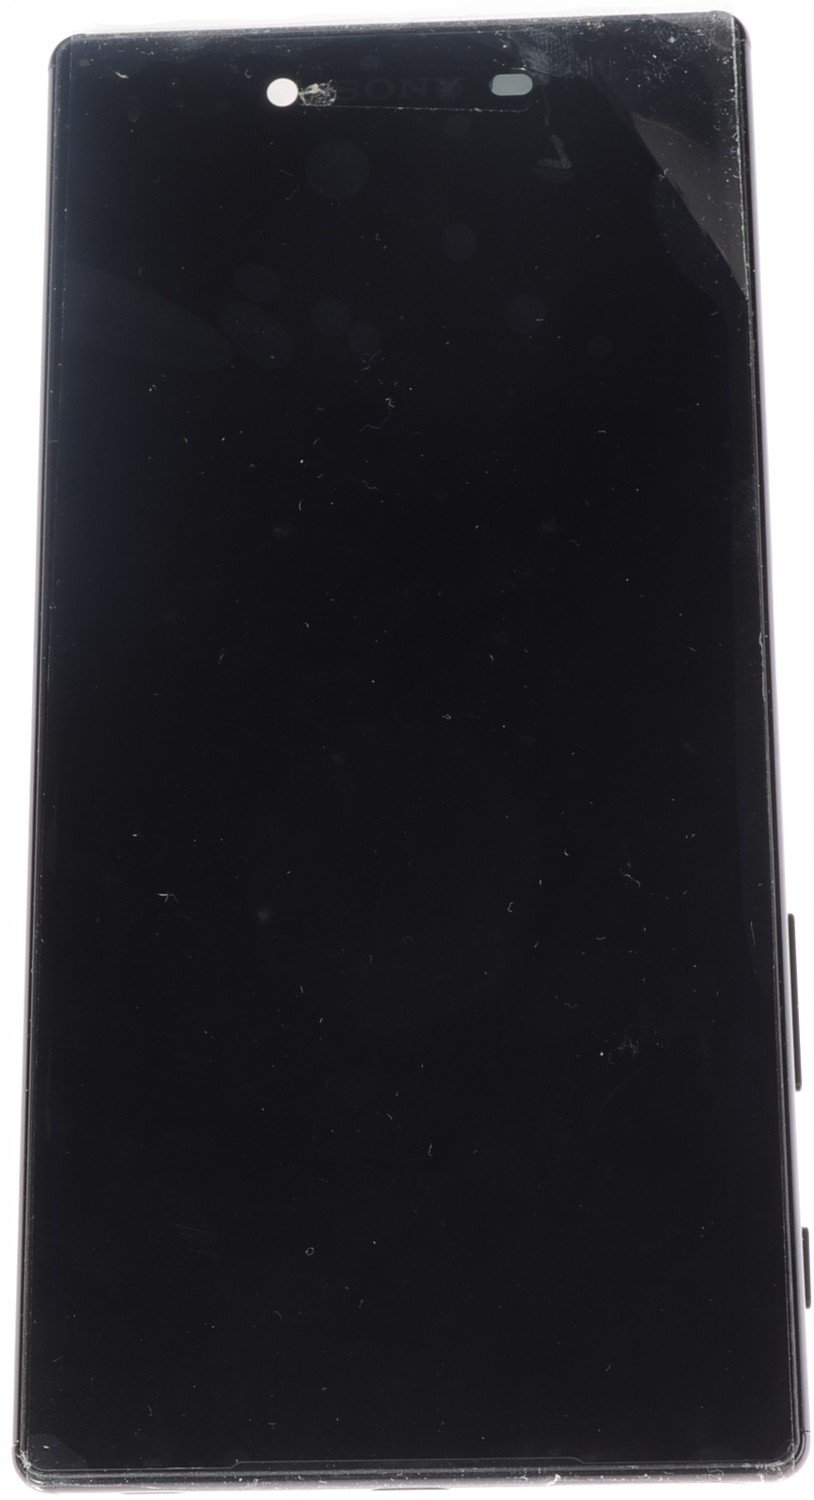 Displej Sony Xperia Z5 Premium E6853černý Now